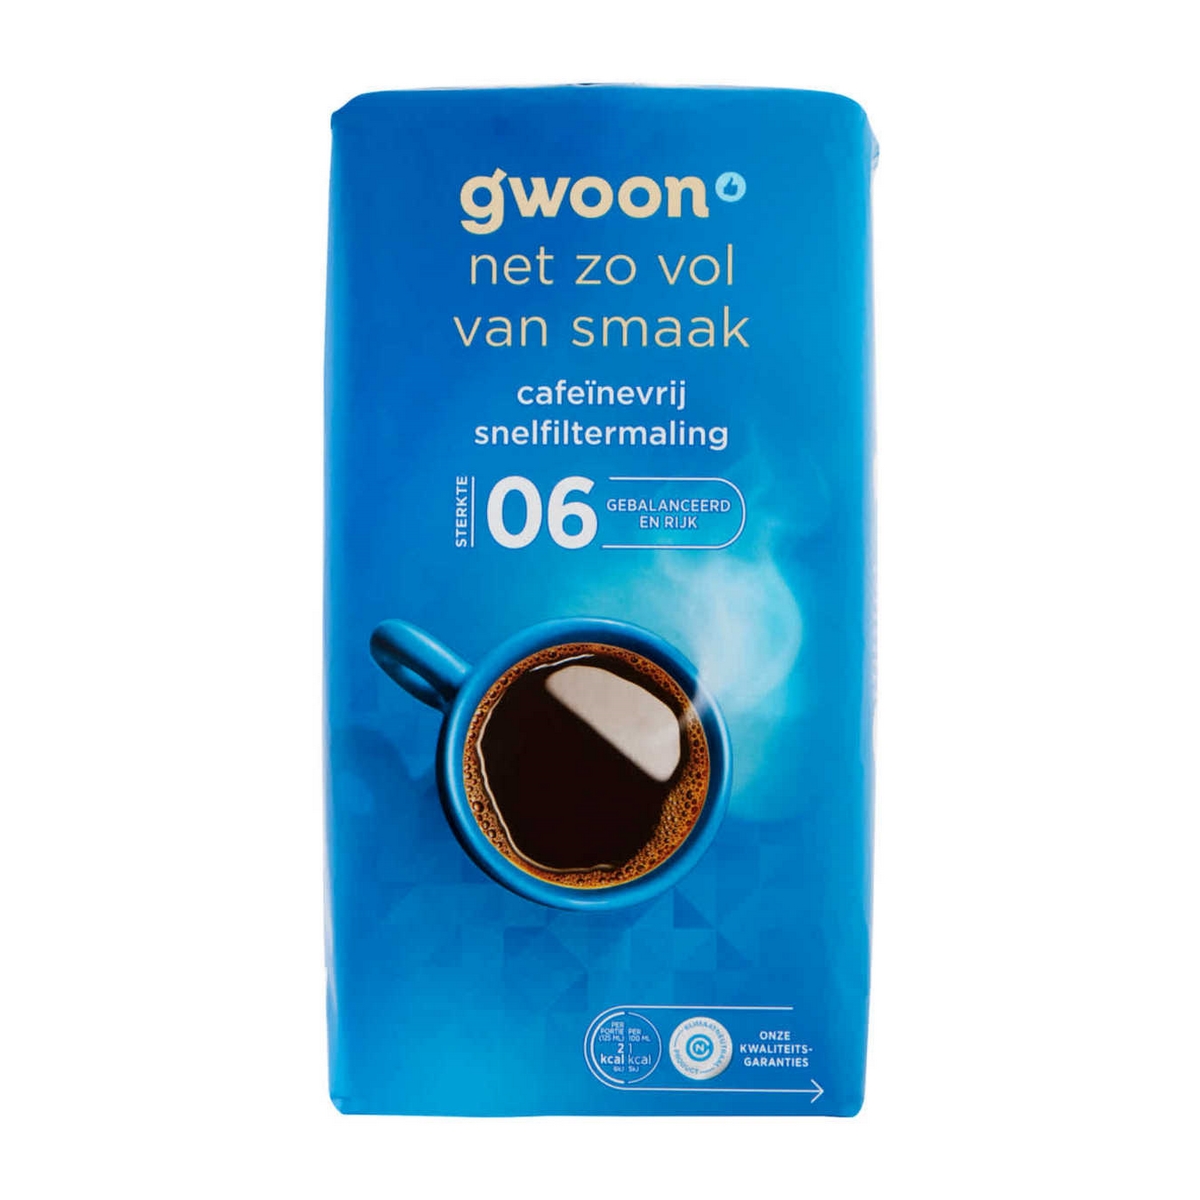 G'woon Koffie Cafeinevrij Snelfiltermaling